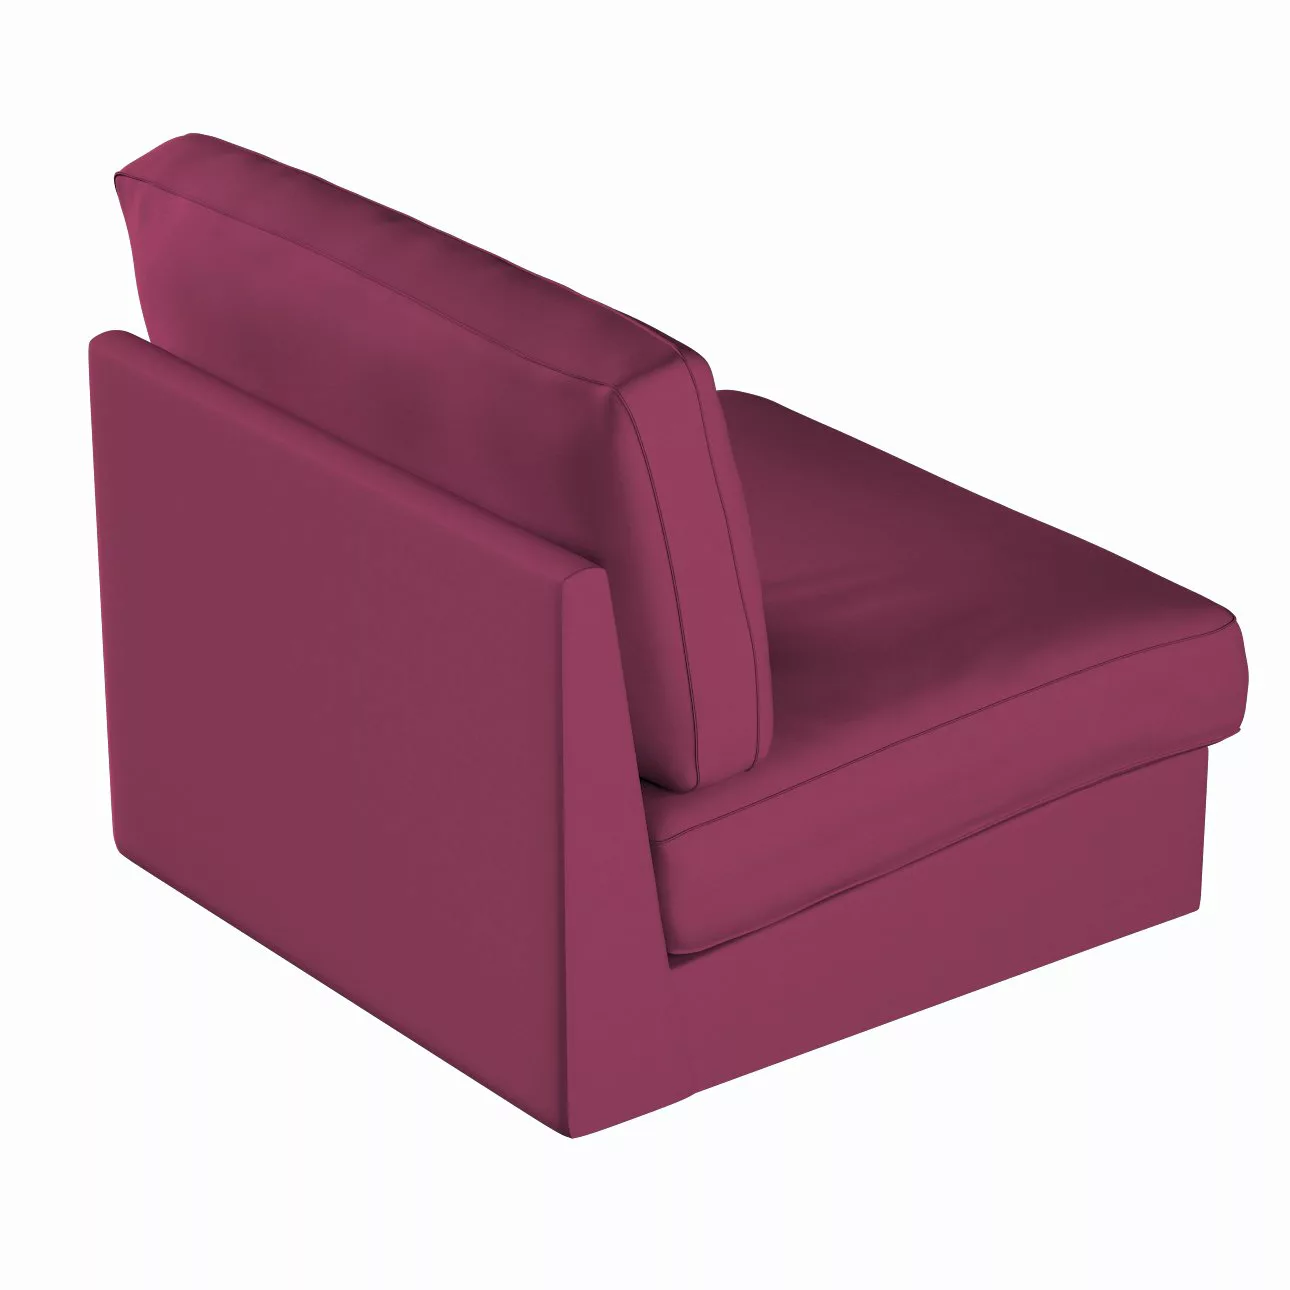 Bezug für Kivik Sessel nicht ausklappbar, pflaume , Bezug für Sessel Kivik, günstig online kaufen